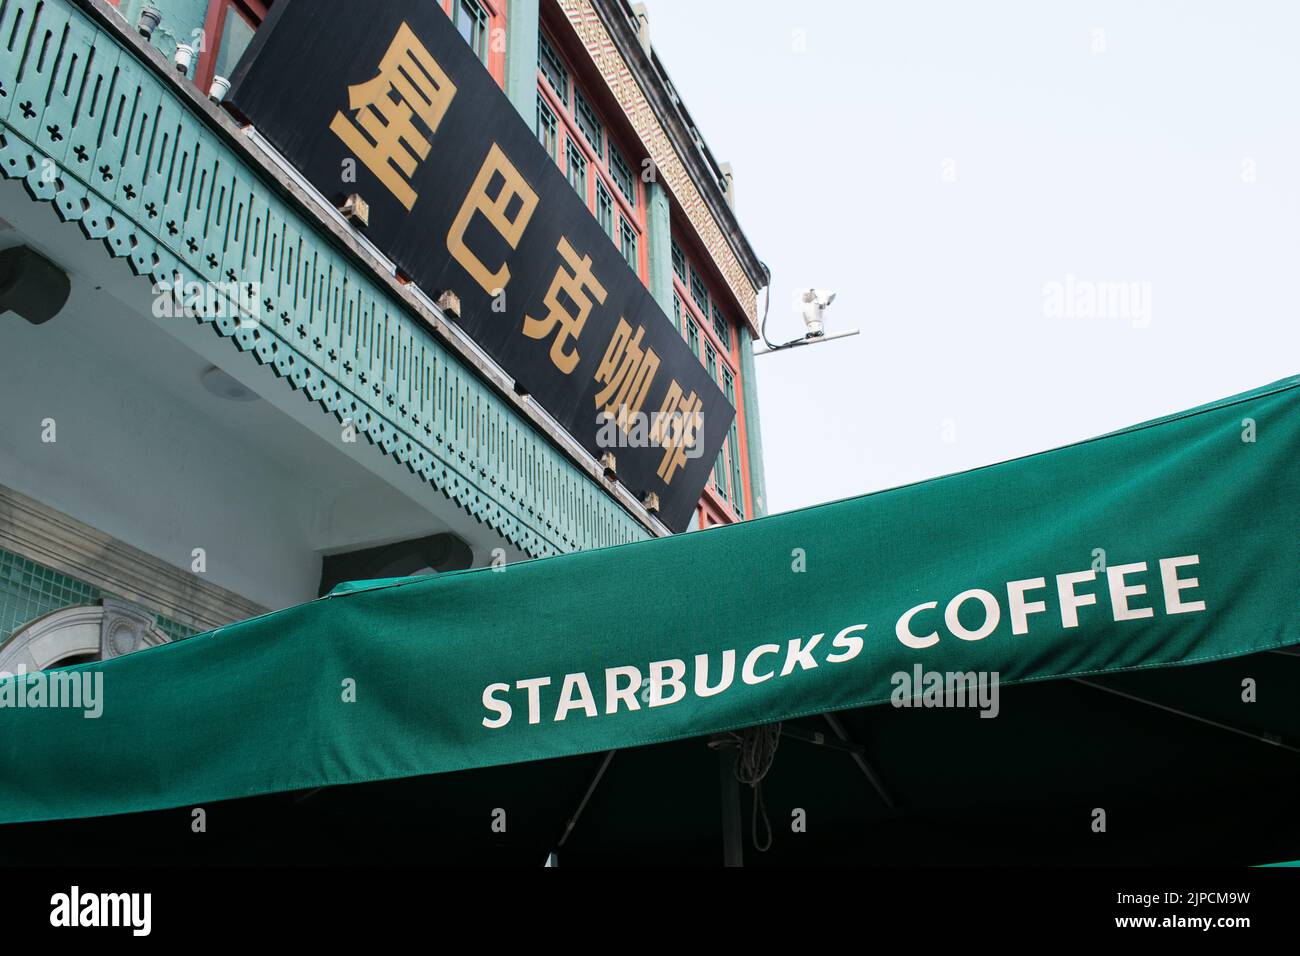 Caffetteria Starbucks, insegna scritta in cinese e inglese - Qianmen Street, Pechino. Foto Stock